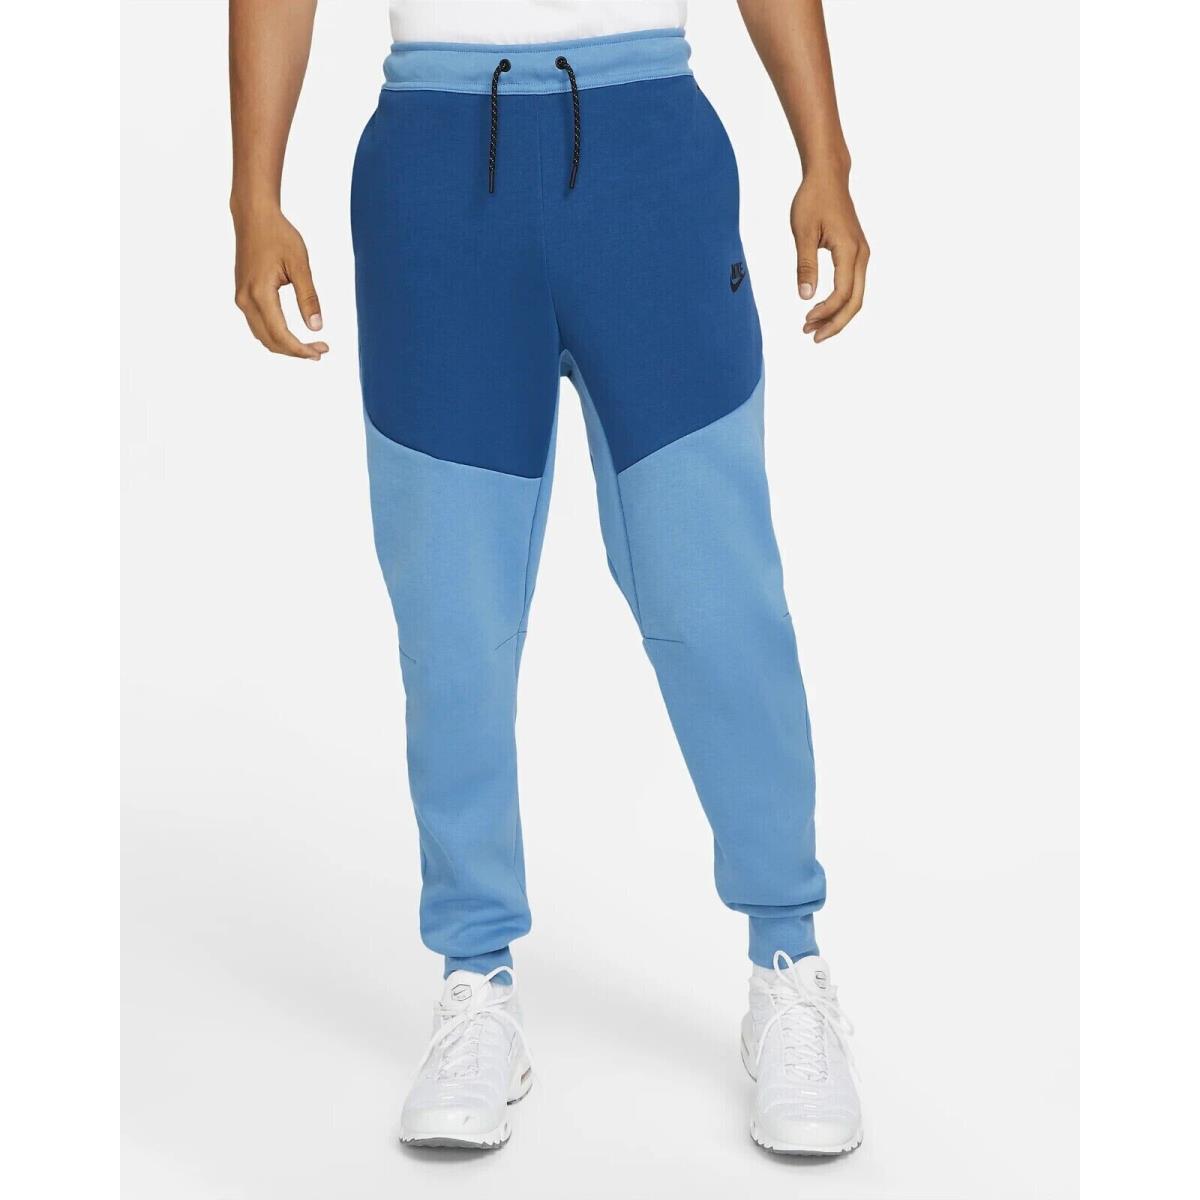 Nike Sportswear Men s Tech Fleece Jogger Pants Dutch Blue CU4495-469 Size Small